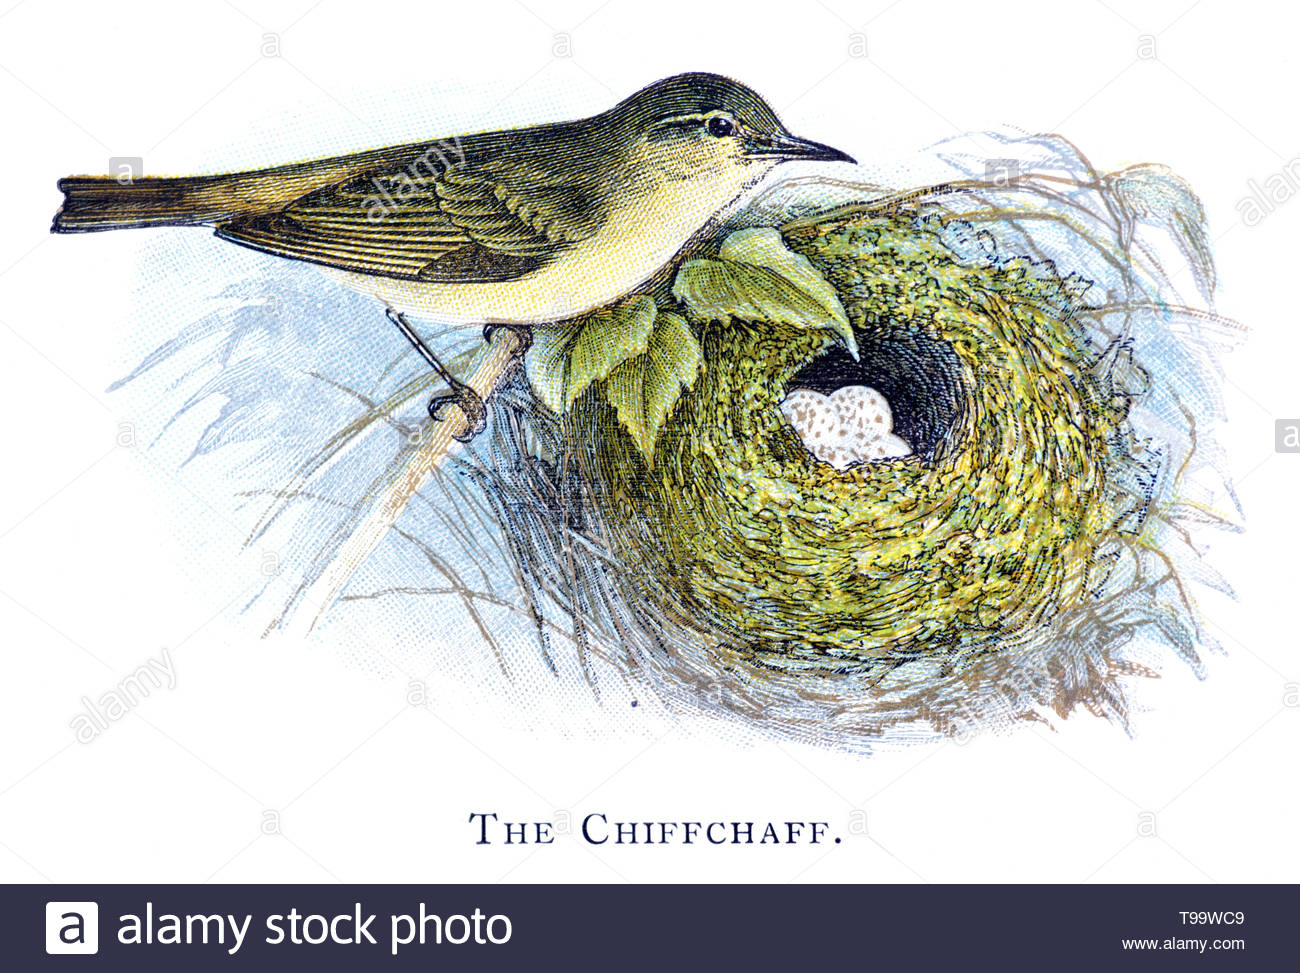 Comune (Chiffchaff Phylloscopus collybita) a nido con uova, illustrazione vintage pubblicato in 1898 Foto Stock